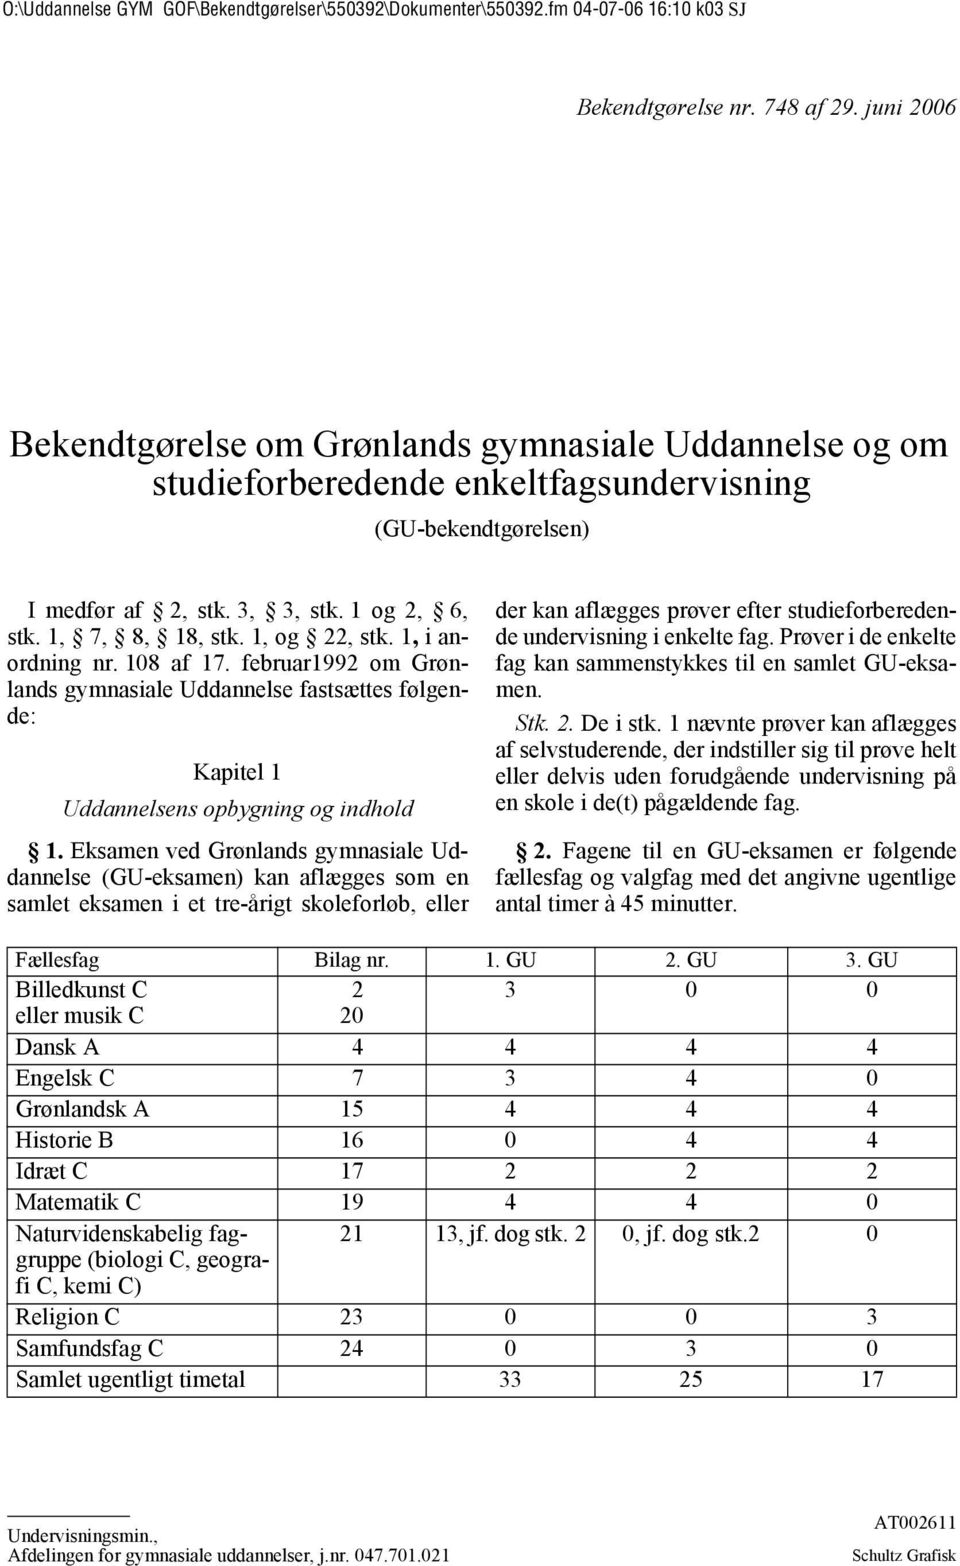 Eksamen ved Grønlands gymnasiale Uddannelse (GU-eksamen) kan aflægges som en samlet eksamen i et tre-årigt skoleforløb, eller der kan aflægges prøver efter studieforberedende undervisning i enkelte